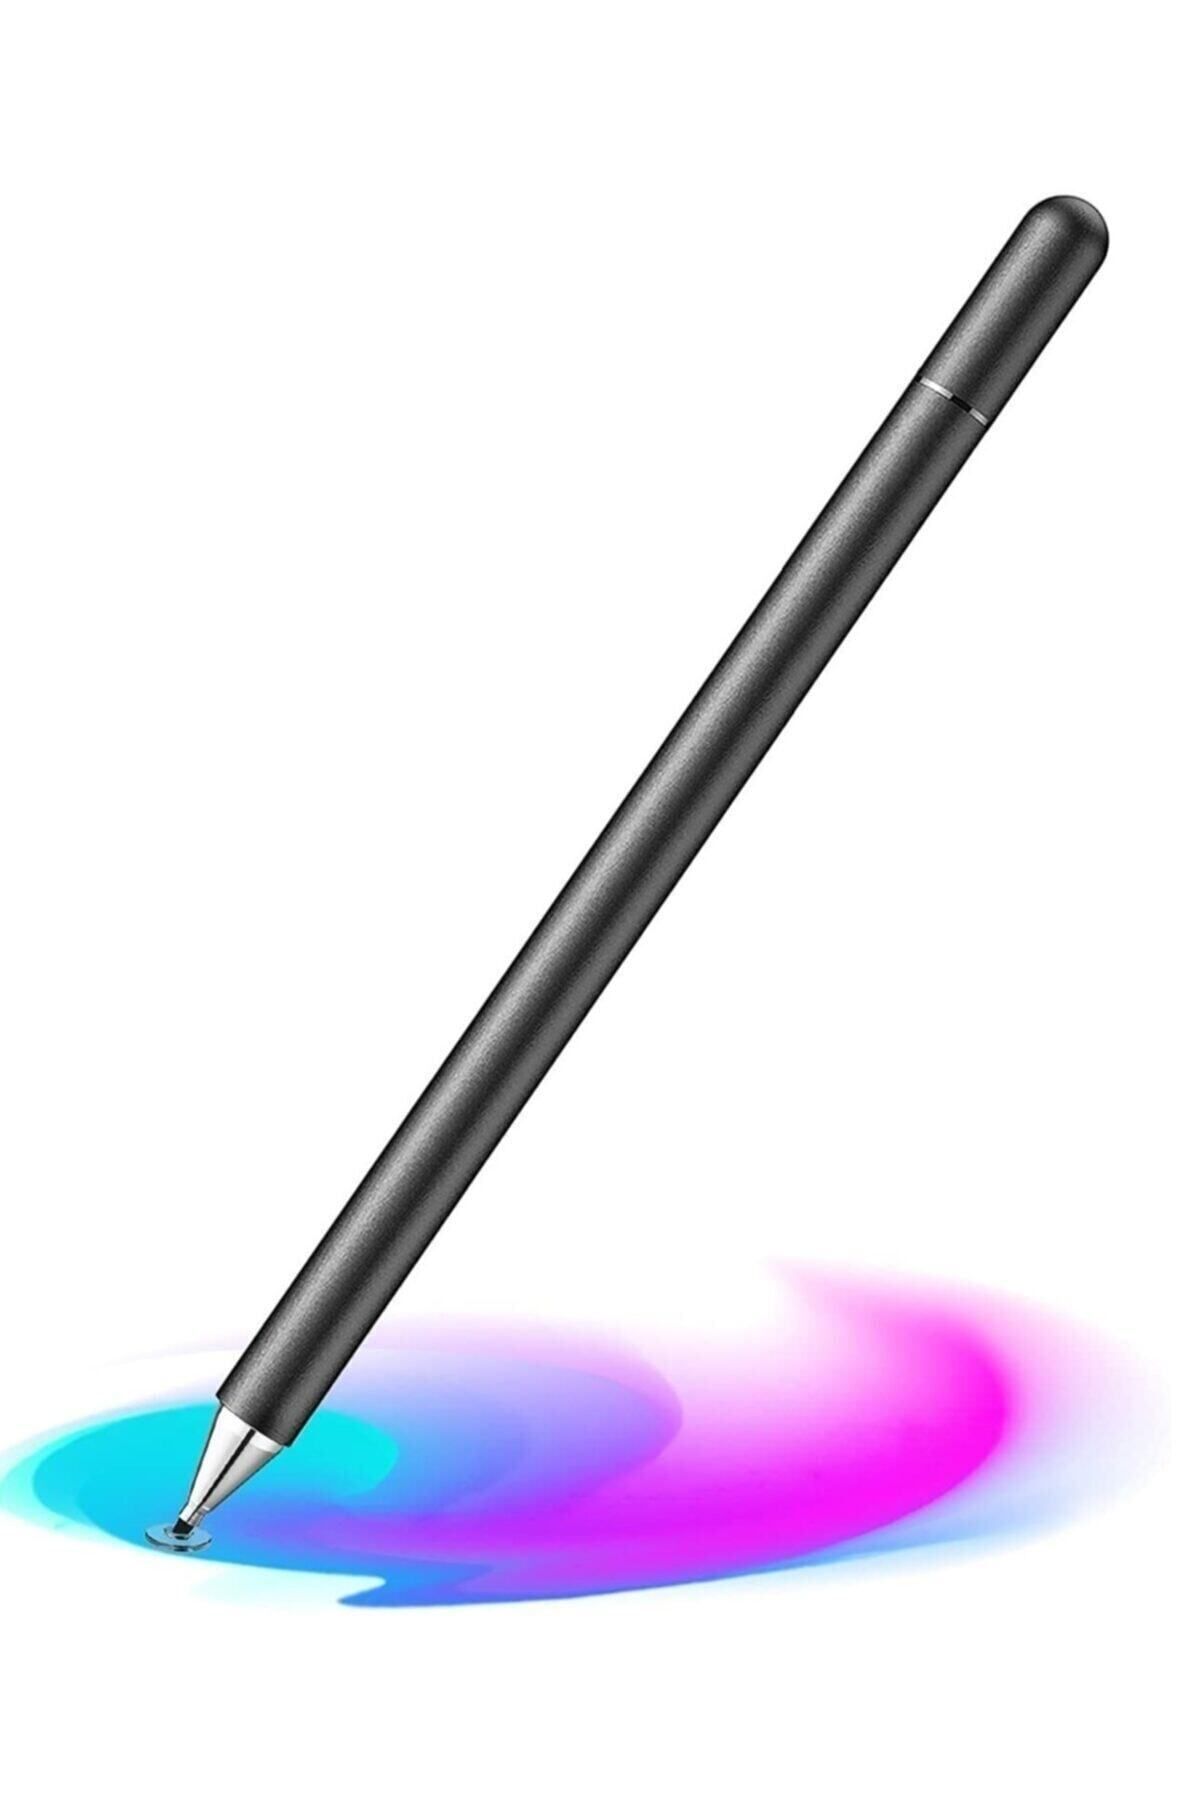 MOBAX Dokunmatik Passive Stylus Kalem Tablet Telefon Bilgisayar Dokunmatik Kalemi Siyah